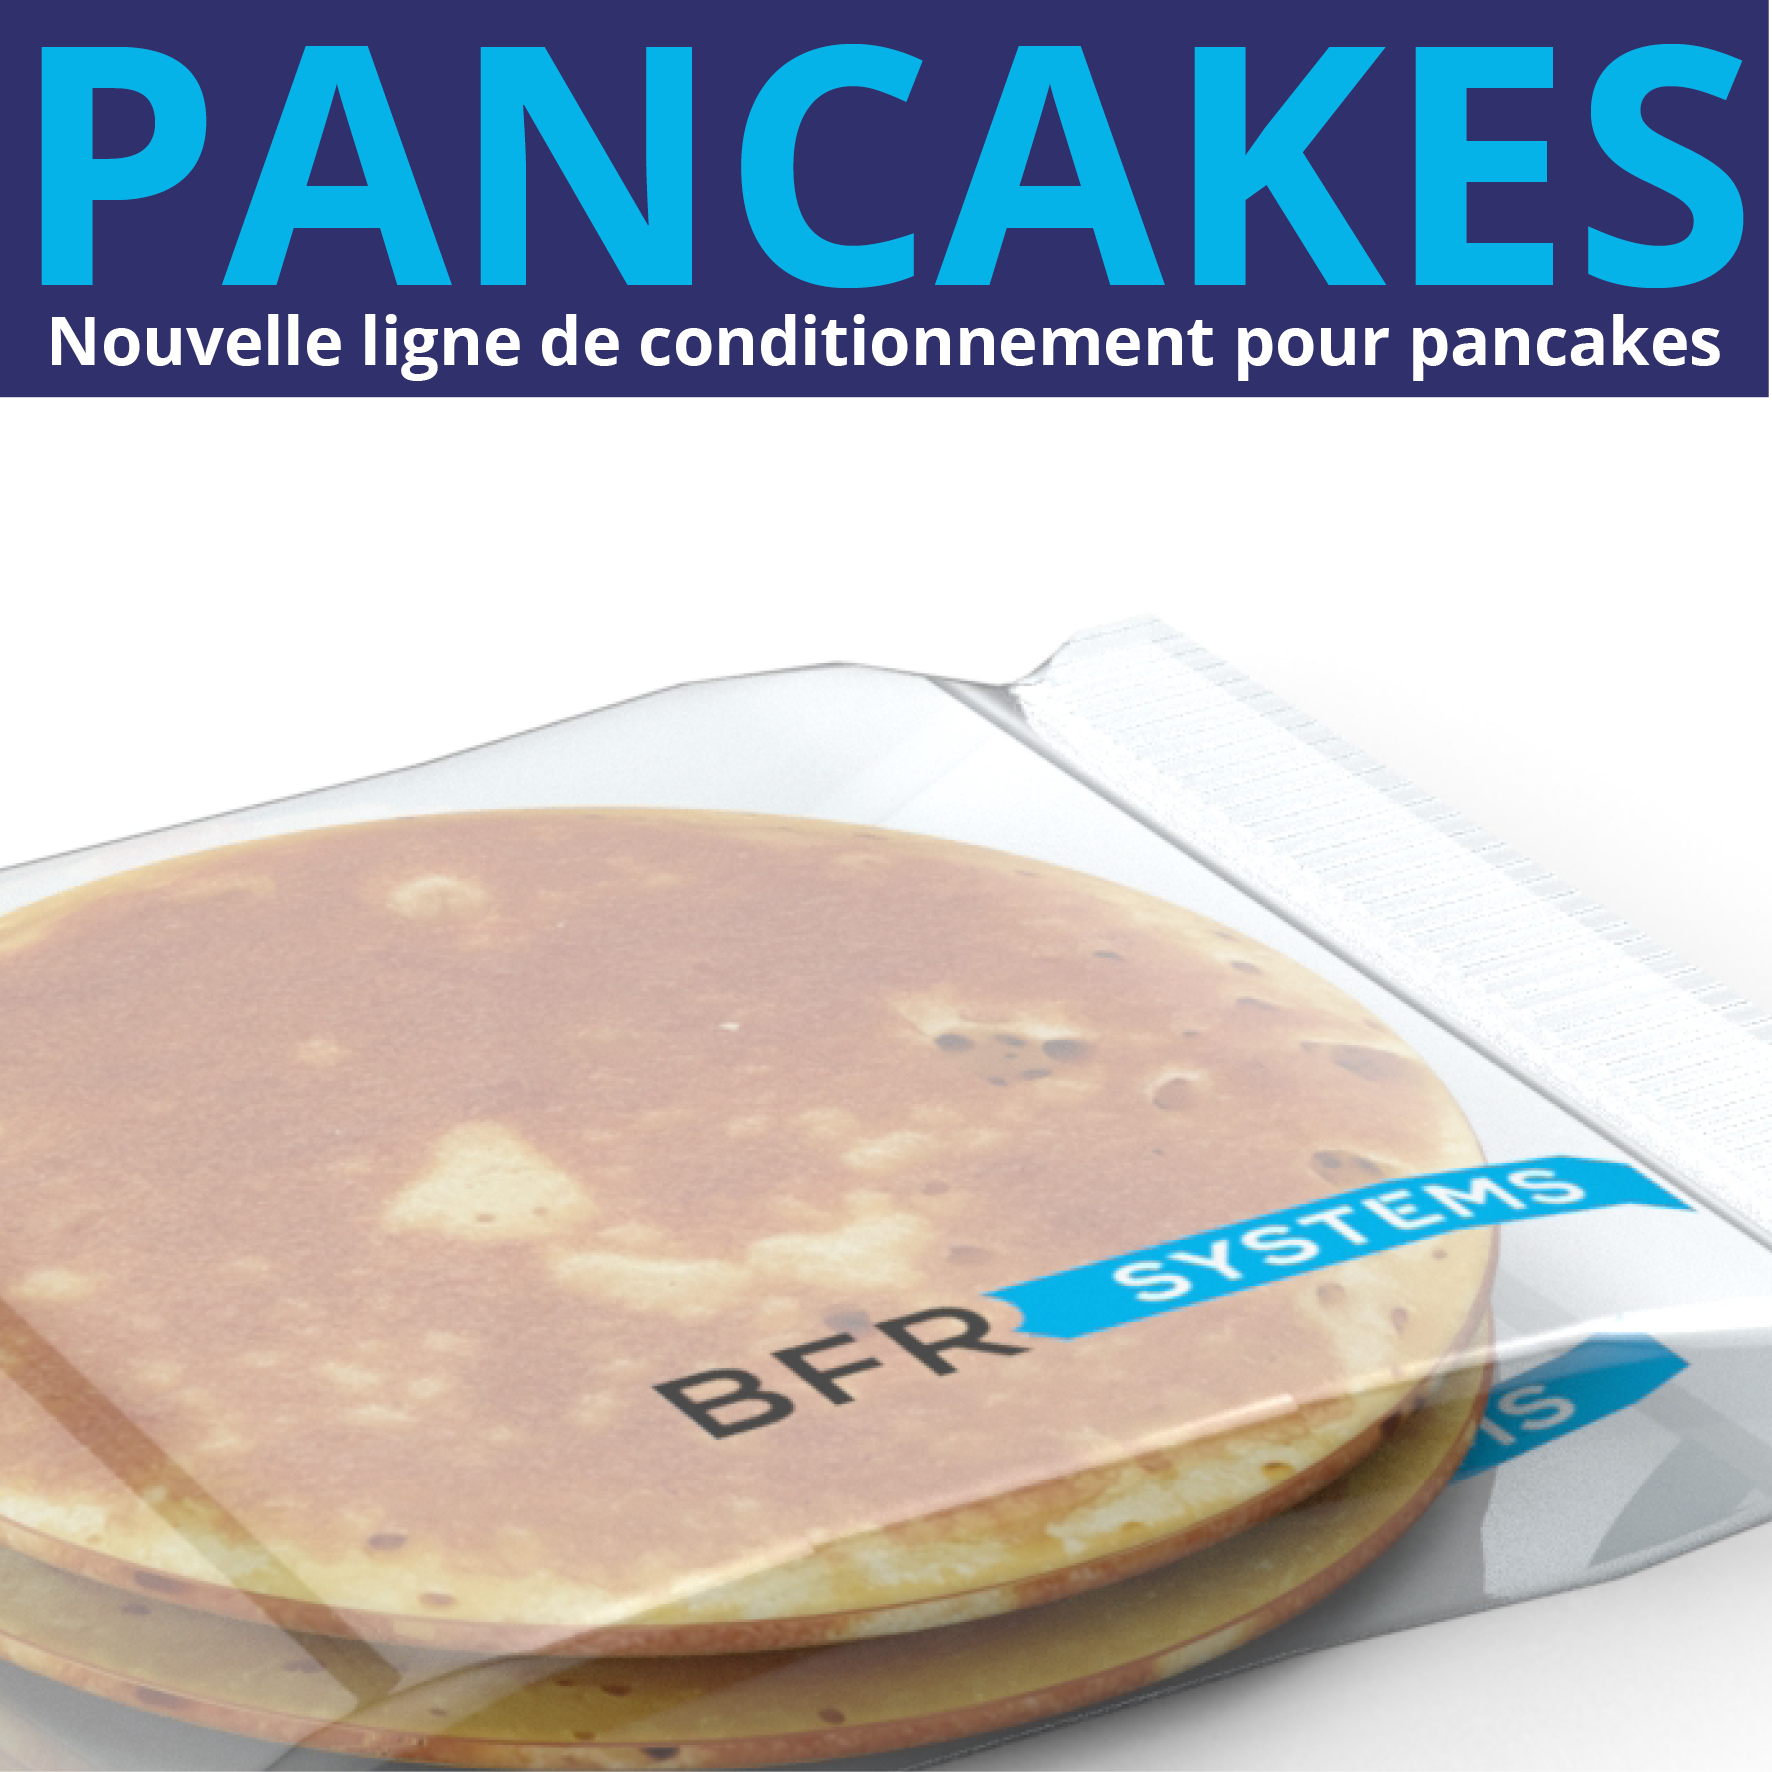 Pancake packaging line